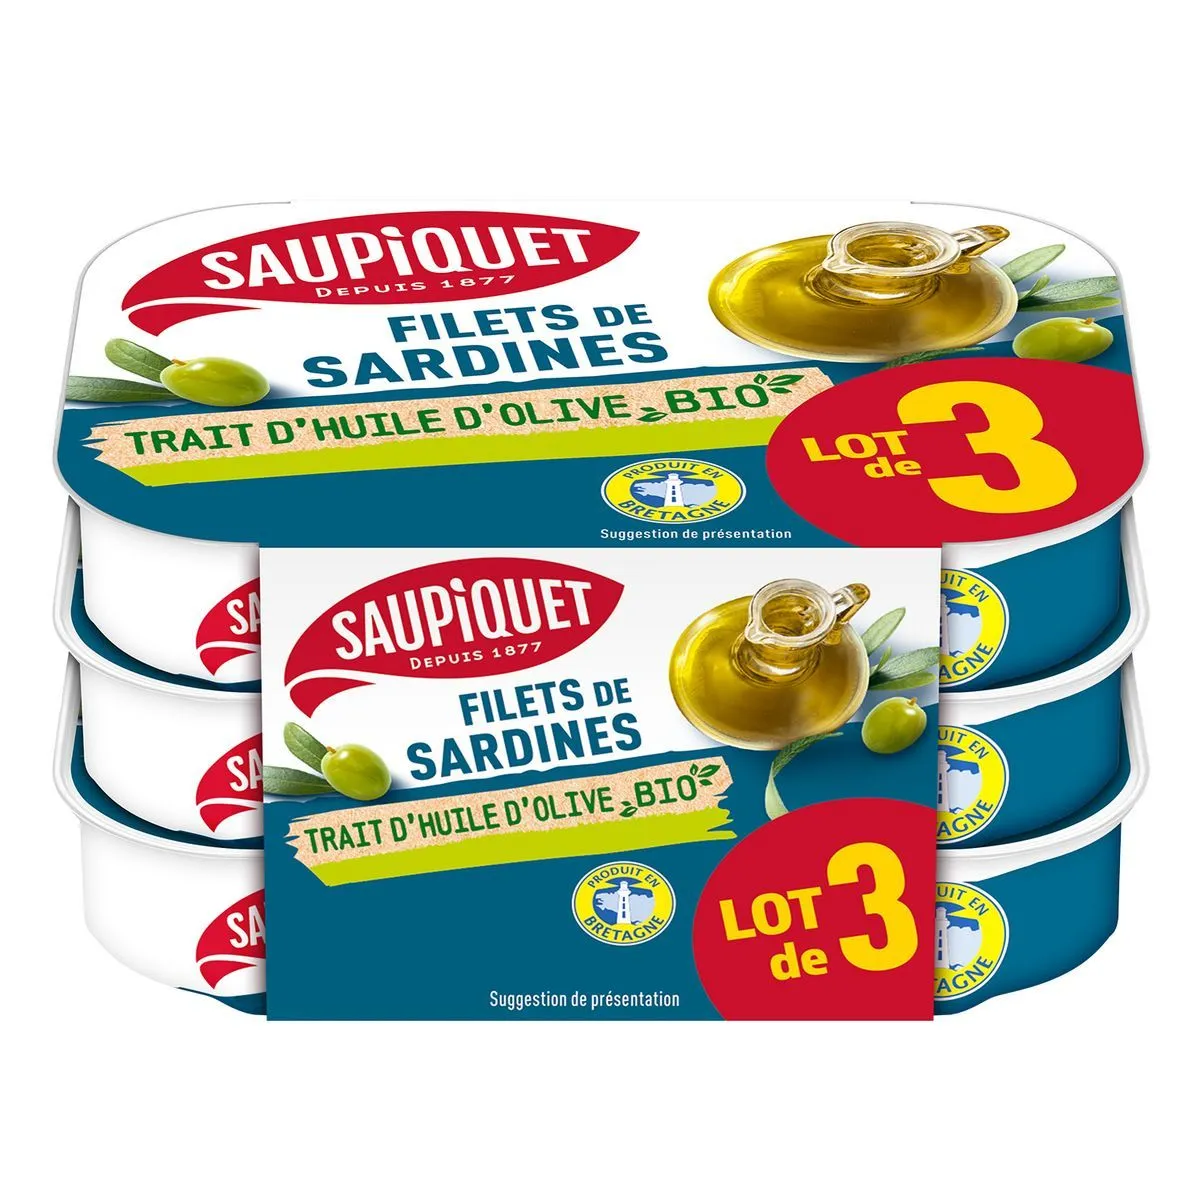  filets de sardines trait d'huile d'olive bio saupiquet